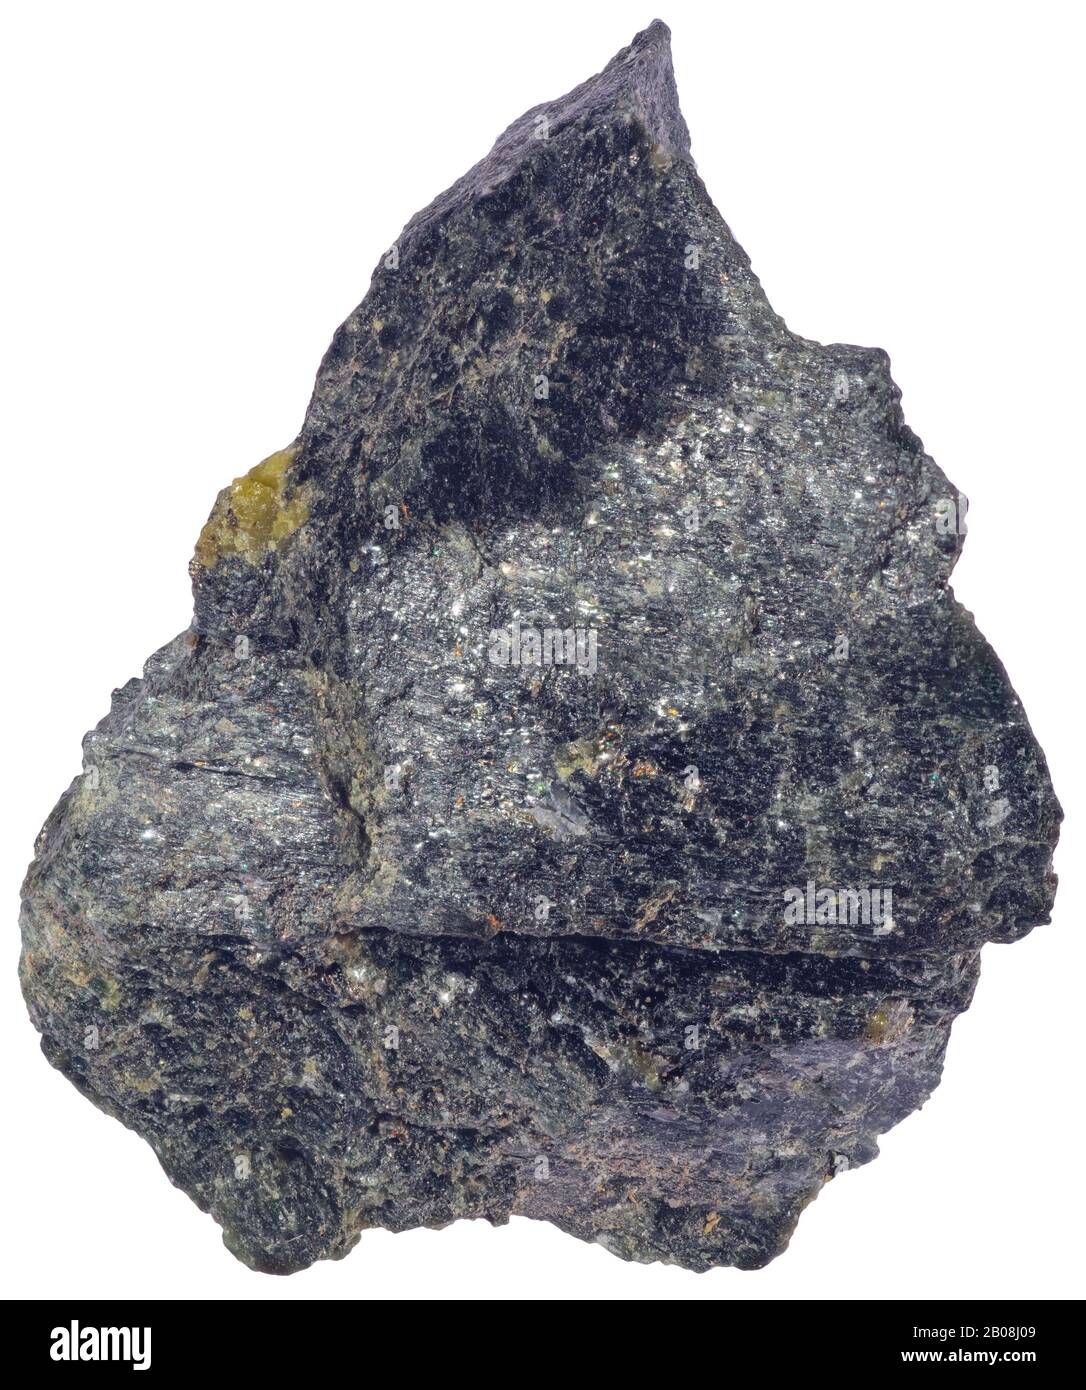 Pennantite, Chlorit, Lennoxville, Quebec Pennantite ist ein Mineral der Chloritgruppe, das aus basischem Silikat aus Mangan und Aluminiumisomorp besteht Stockfoto